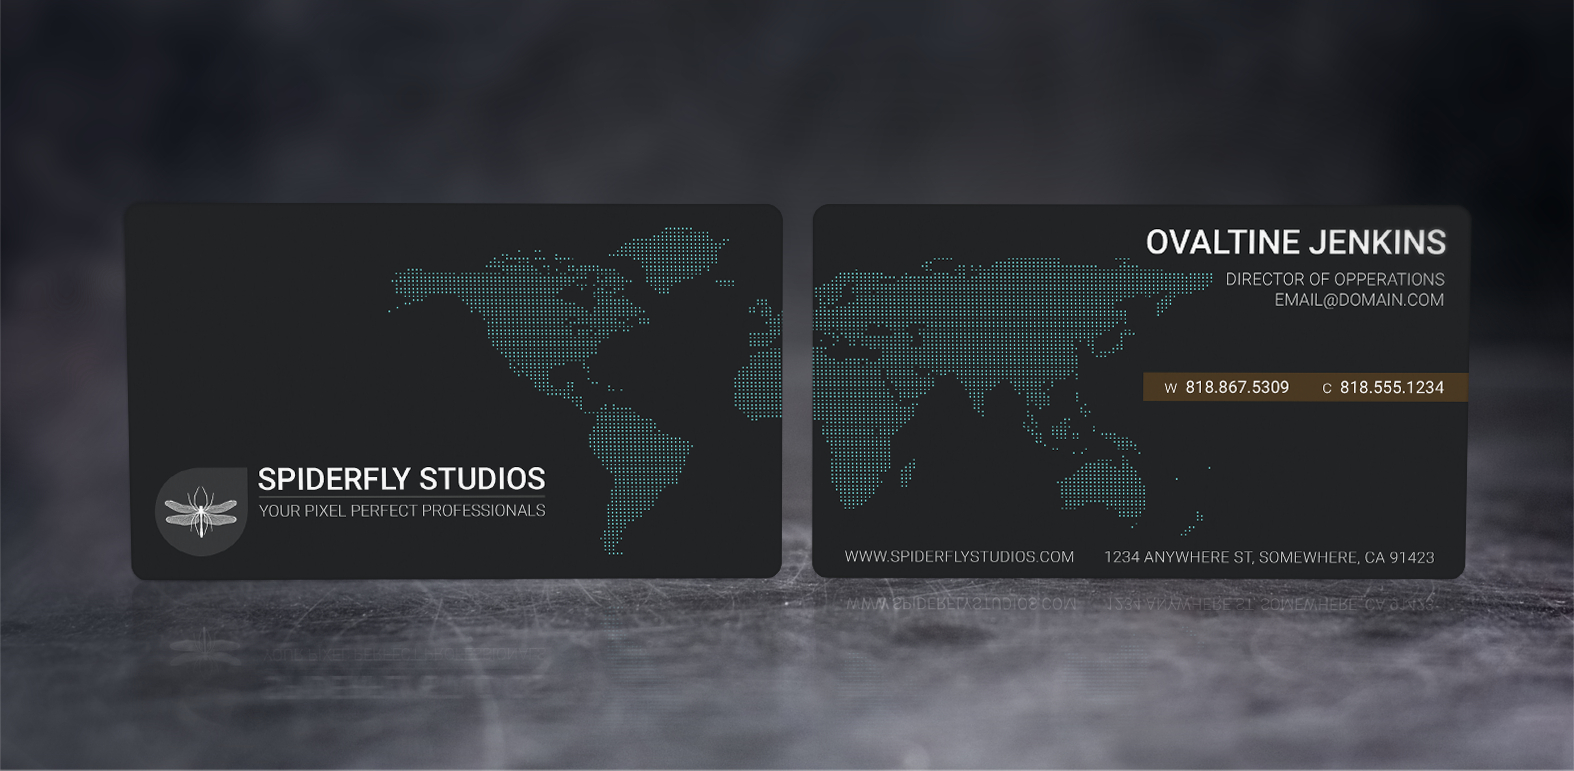 International Business Card Design